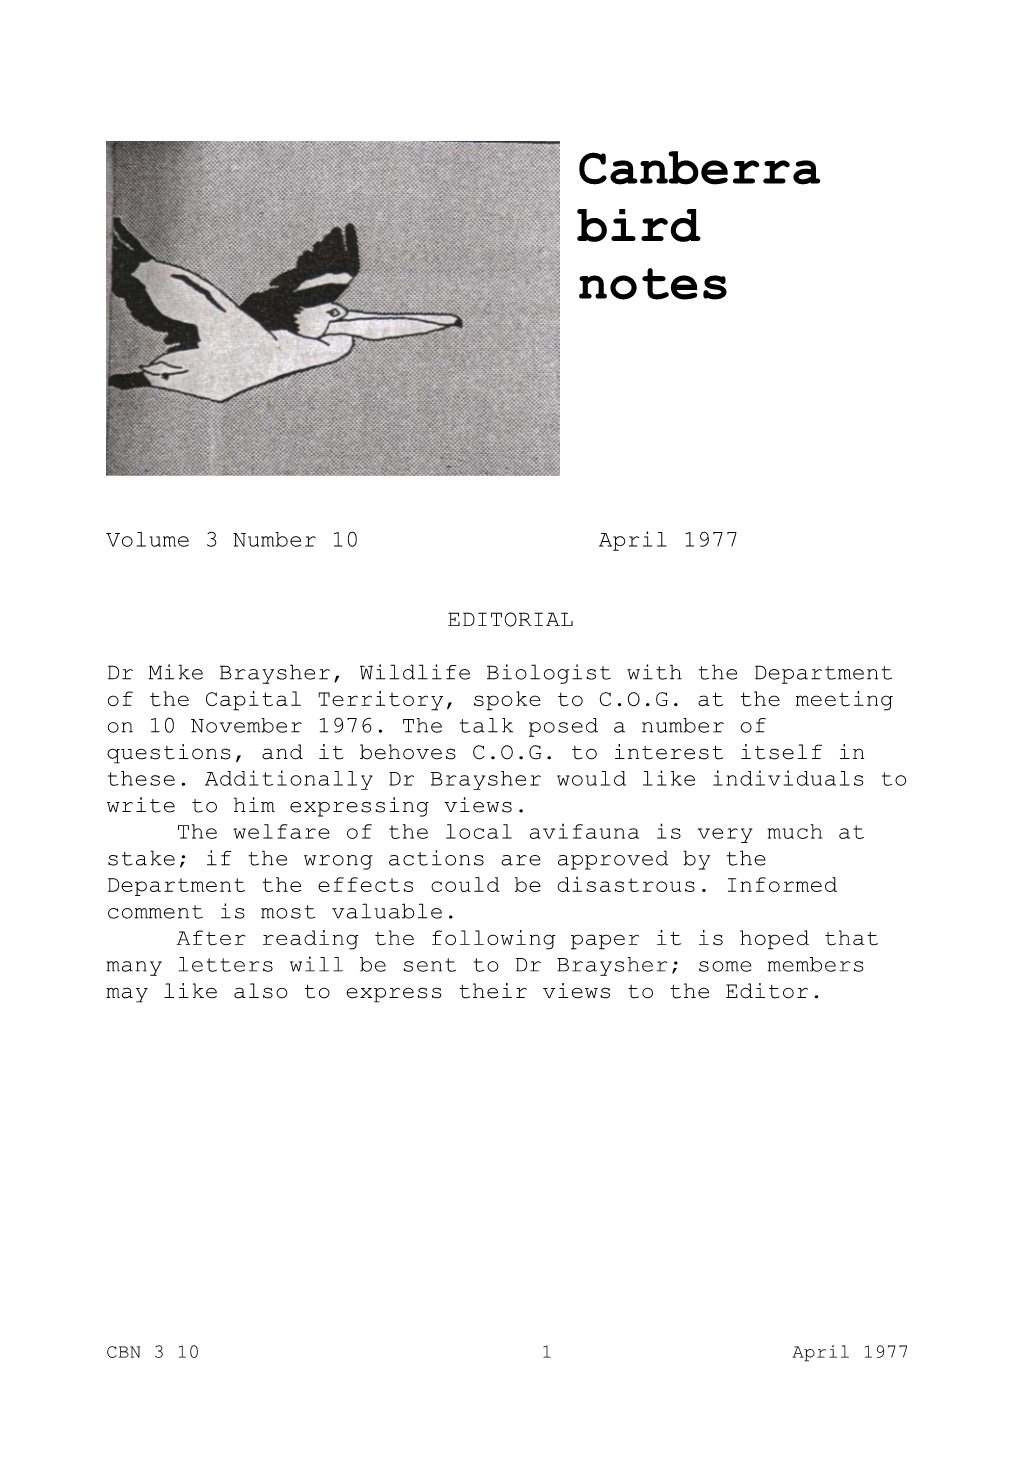 Canberra Bird Notes